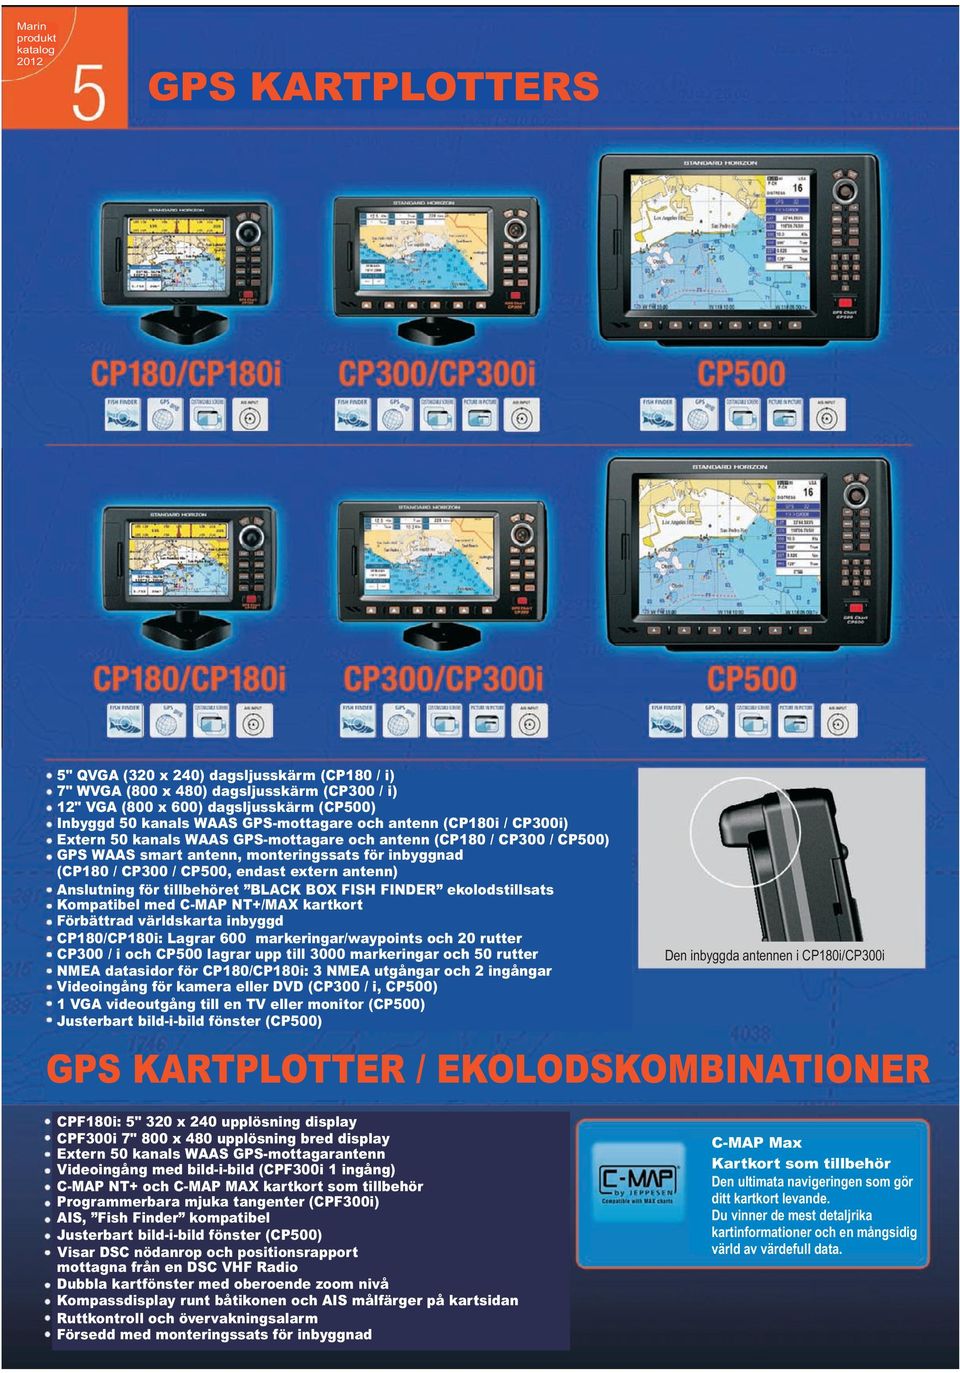 för tillbehöret BLACK BOX FISH FINDER ekolodstillsats Kompatibel med C-MAP NT+/MAX kartkort Förbättrad världskarta inbyggd CP180/CP180i: Lagrar 600 markeringar/waypoints och 20 rutter CP300 / i och